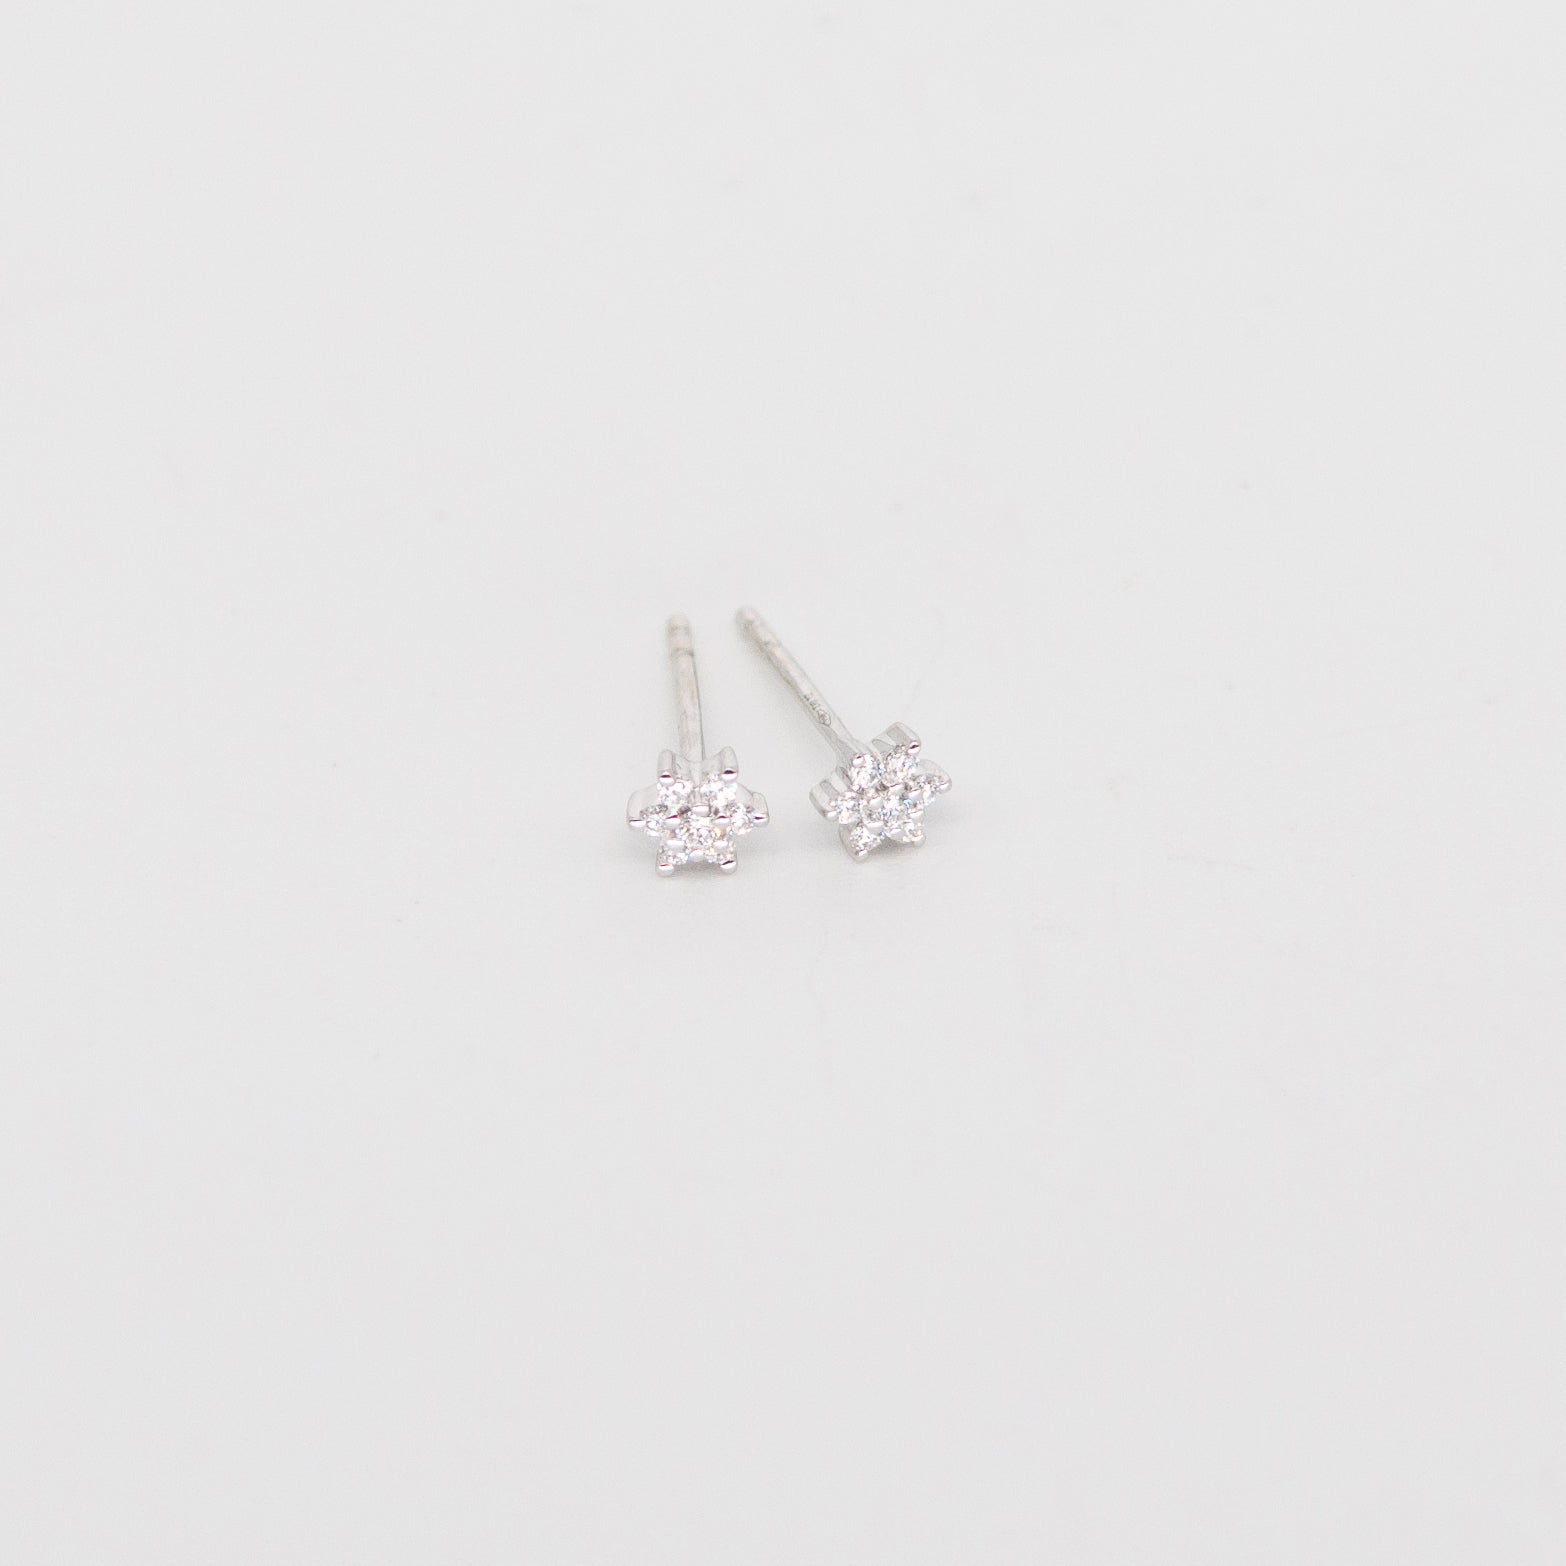 Little stars earrings with diamonds